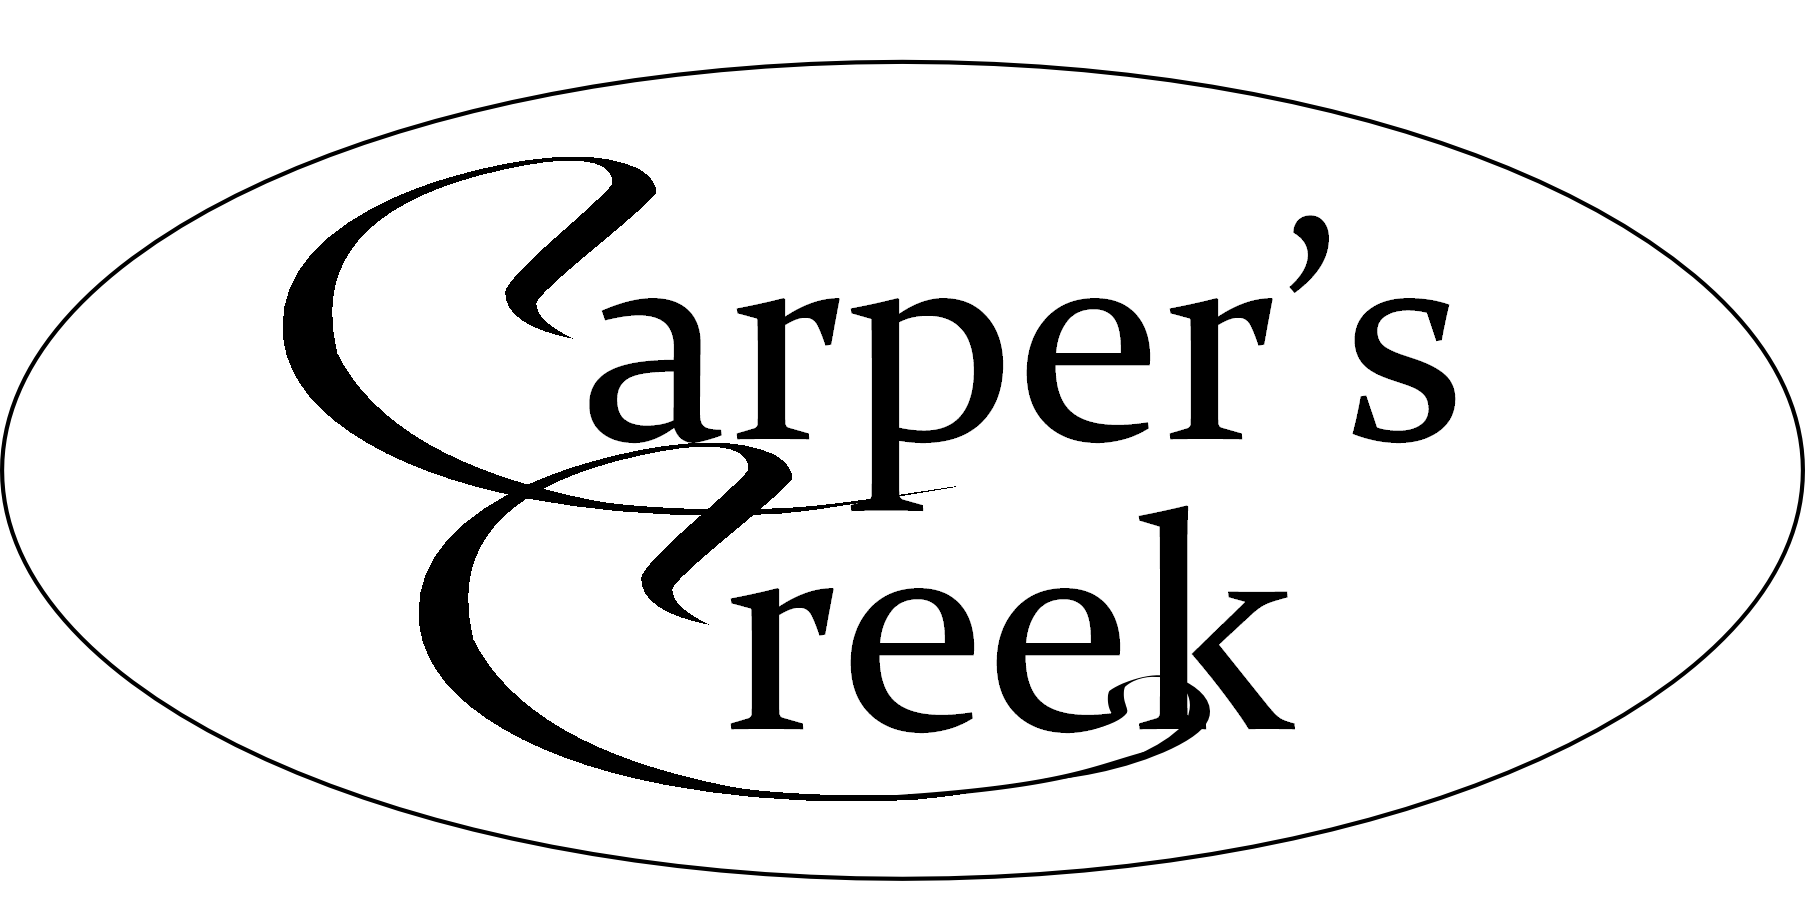 Carper's Creek Publishing